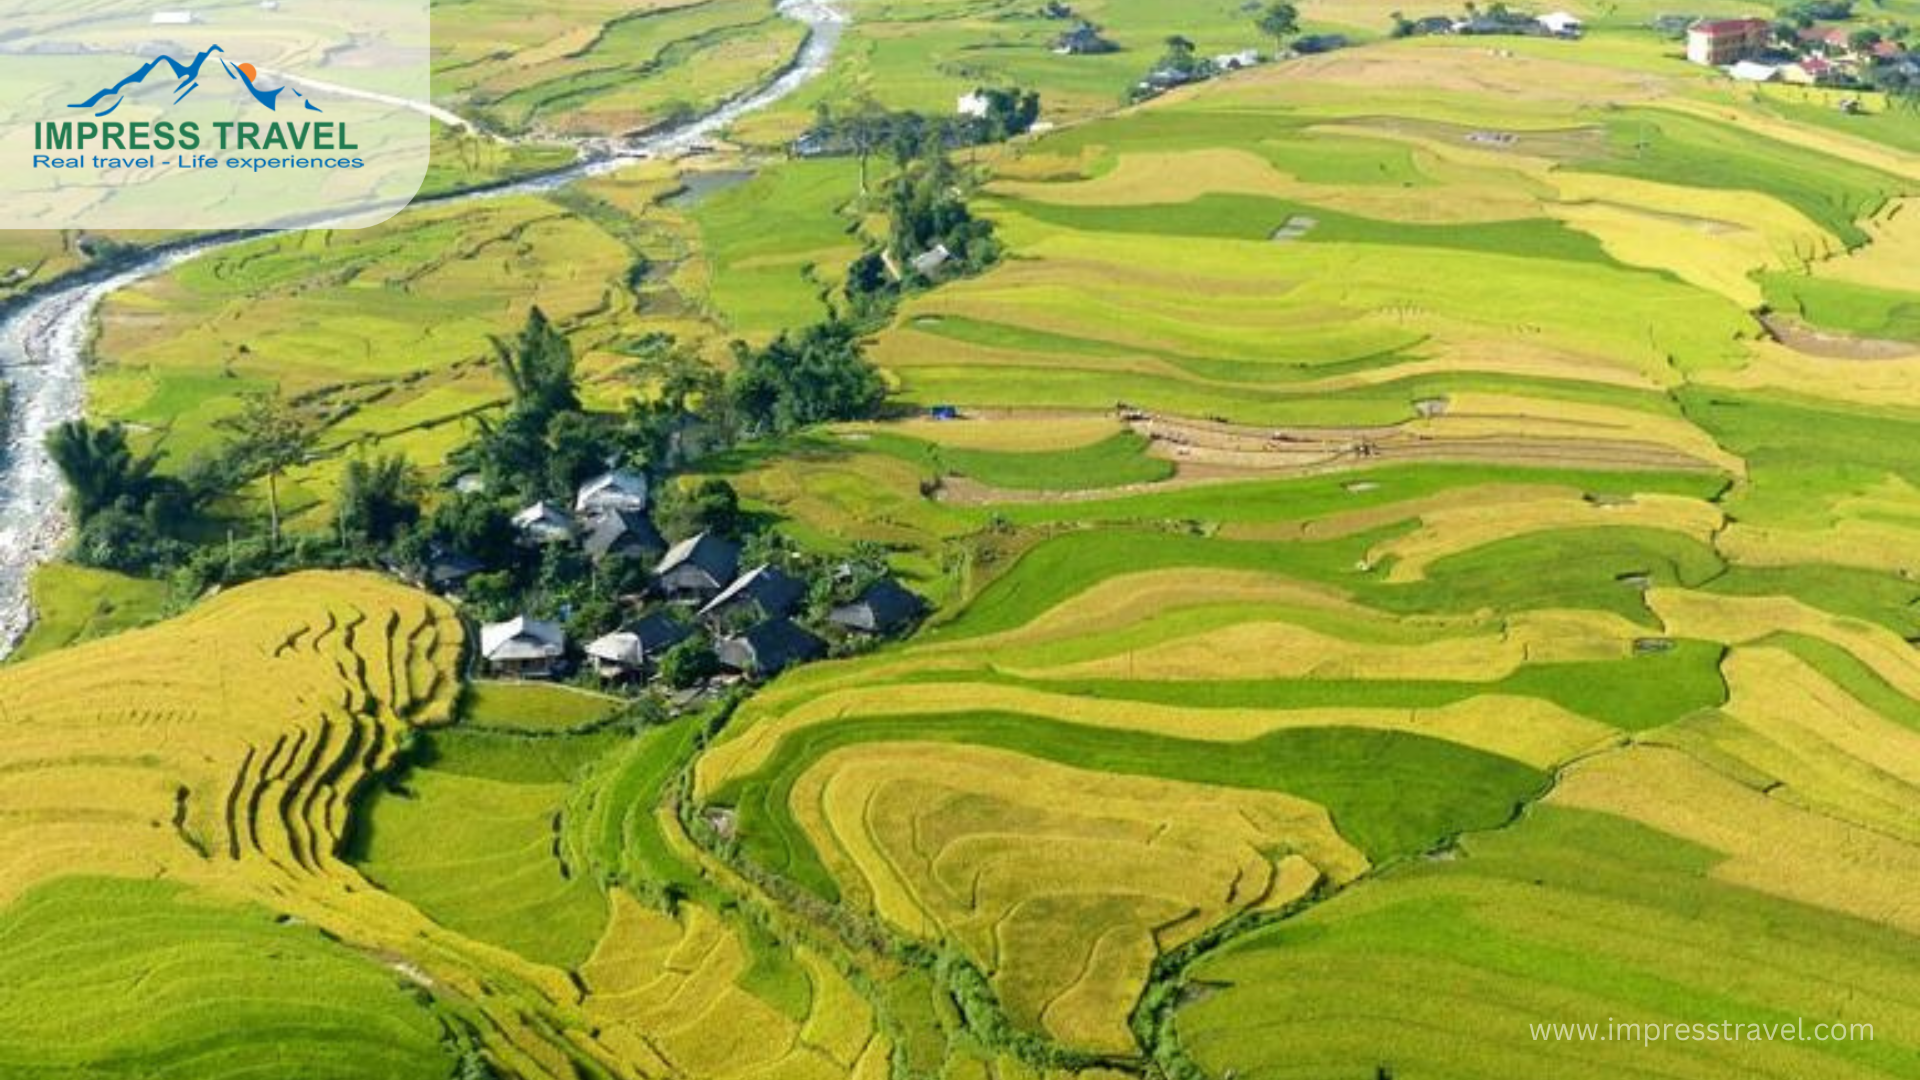 Ripe rice season around September to October